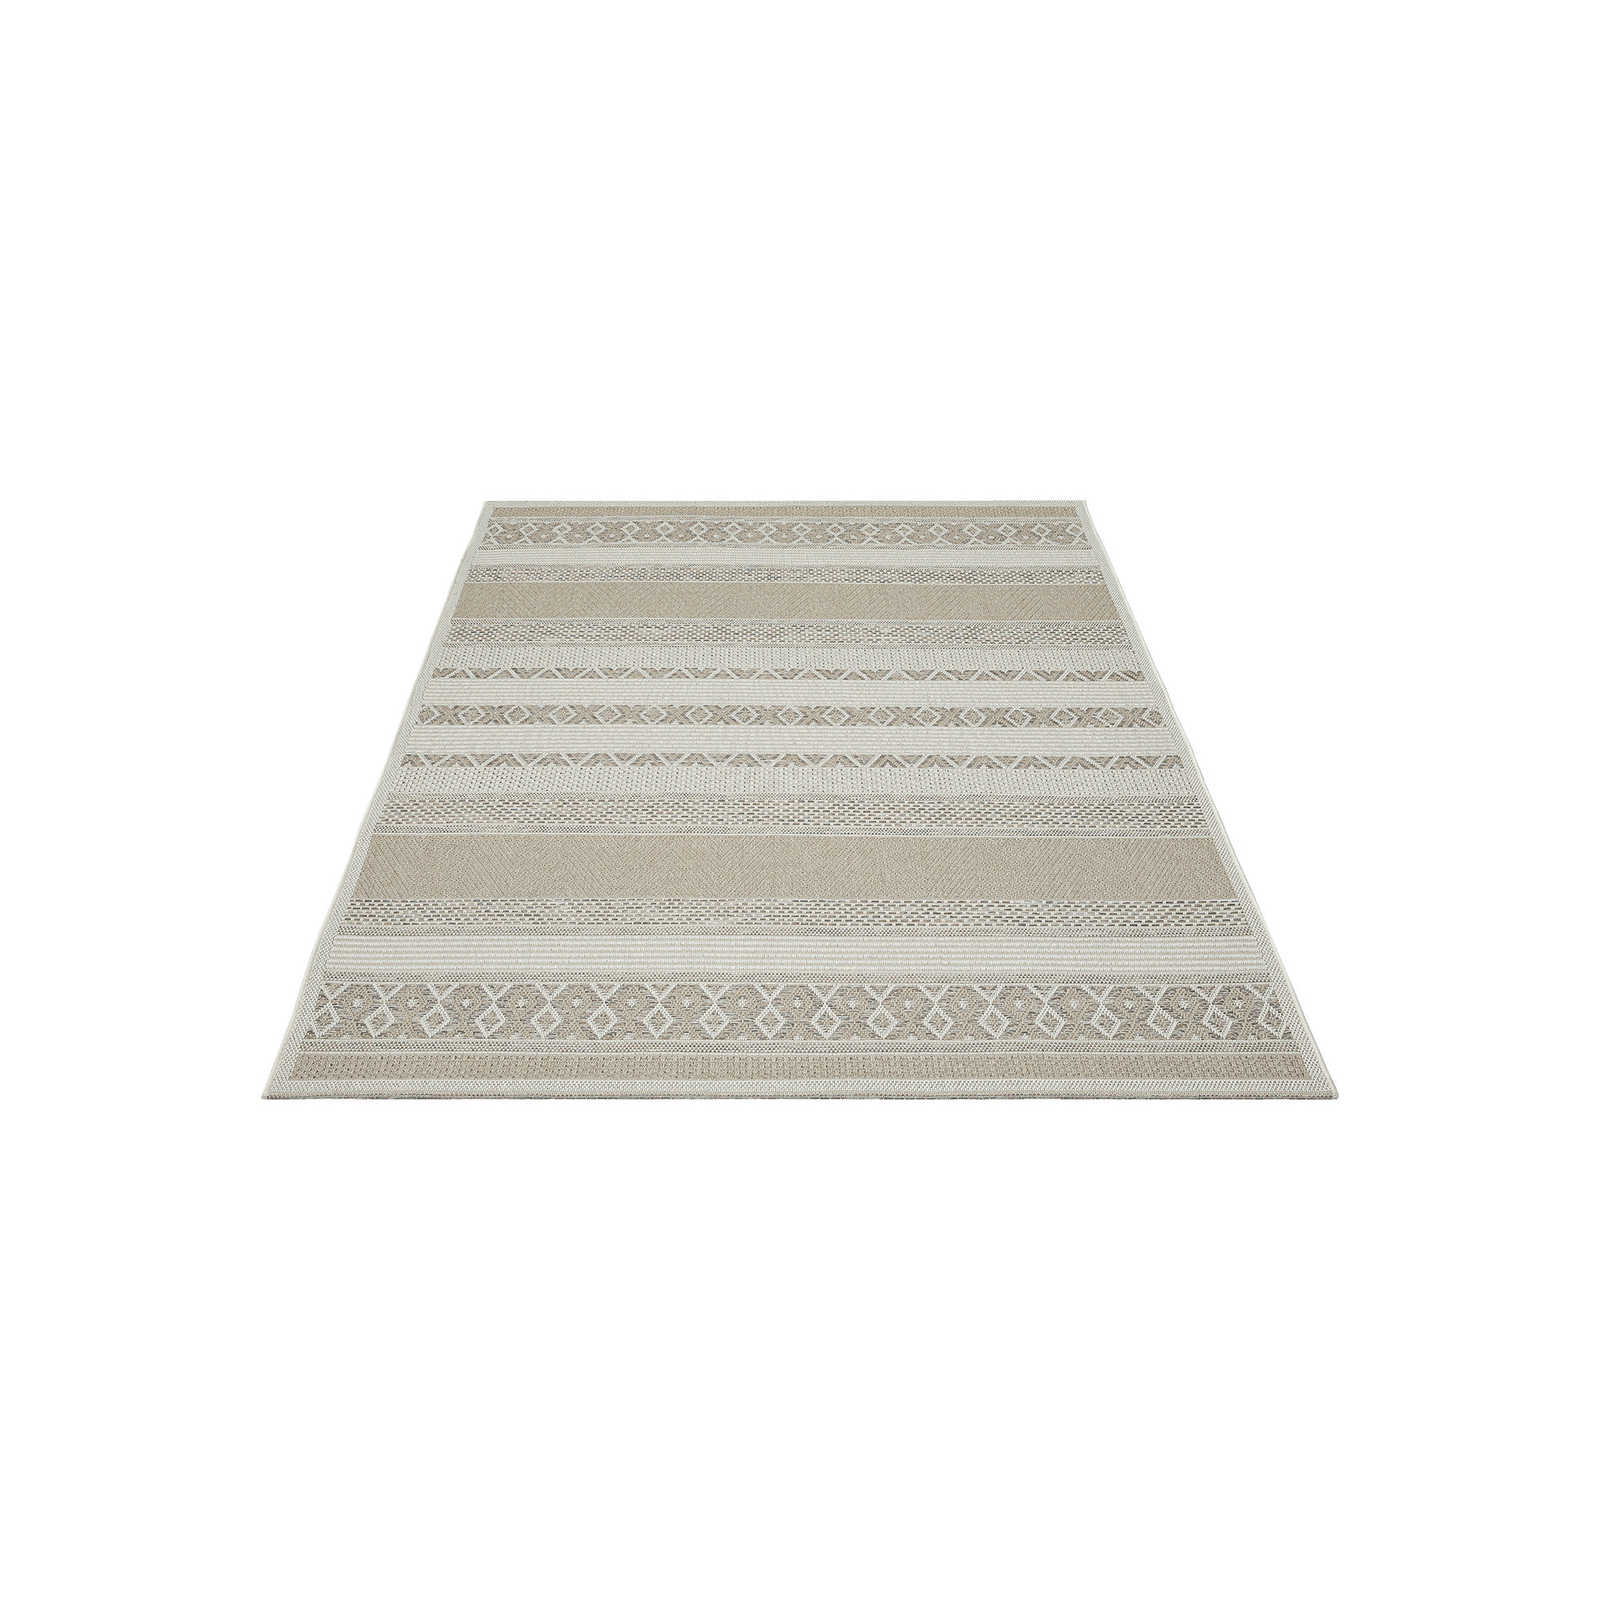 Outdoor Teppich aus Flachgewebe in schlichten Beige – 200 x 140 cm
